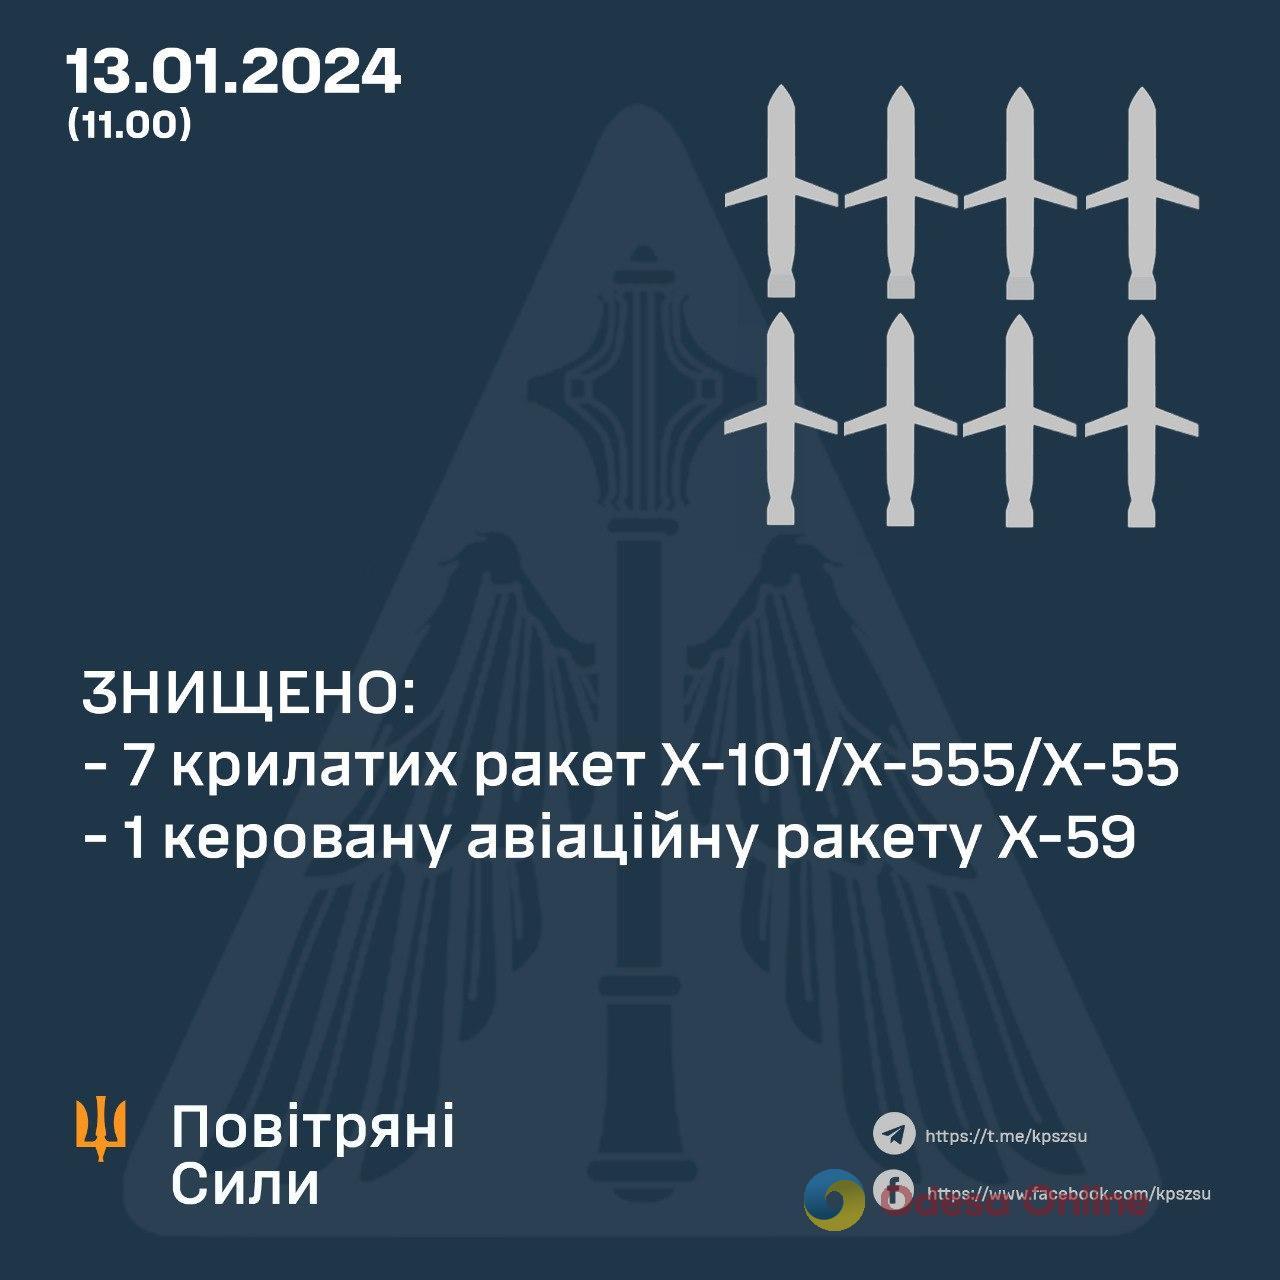 Восемь крылатых ракет были уничтожены над Украиной во время утренней атаки